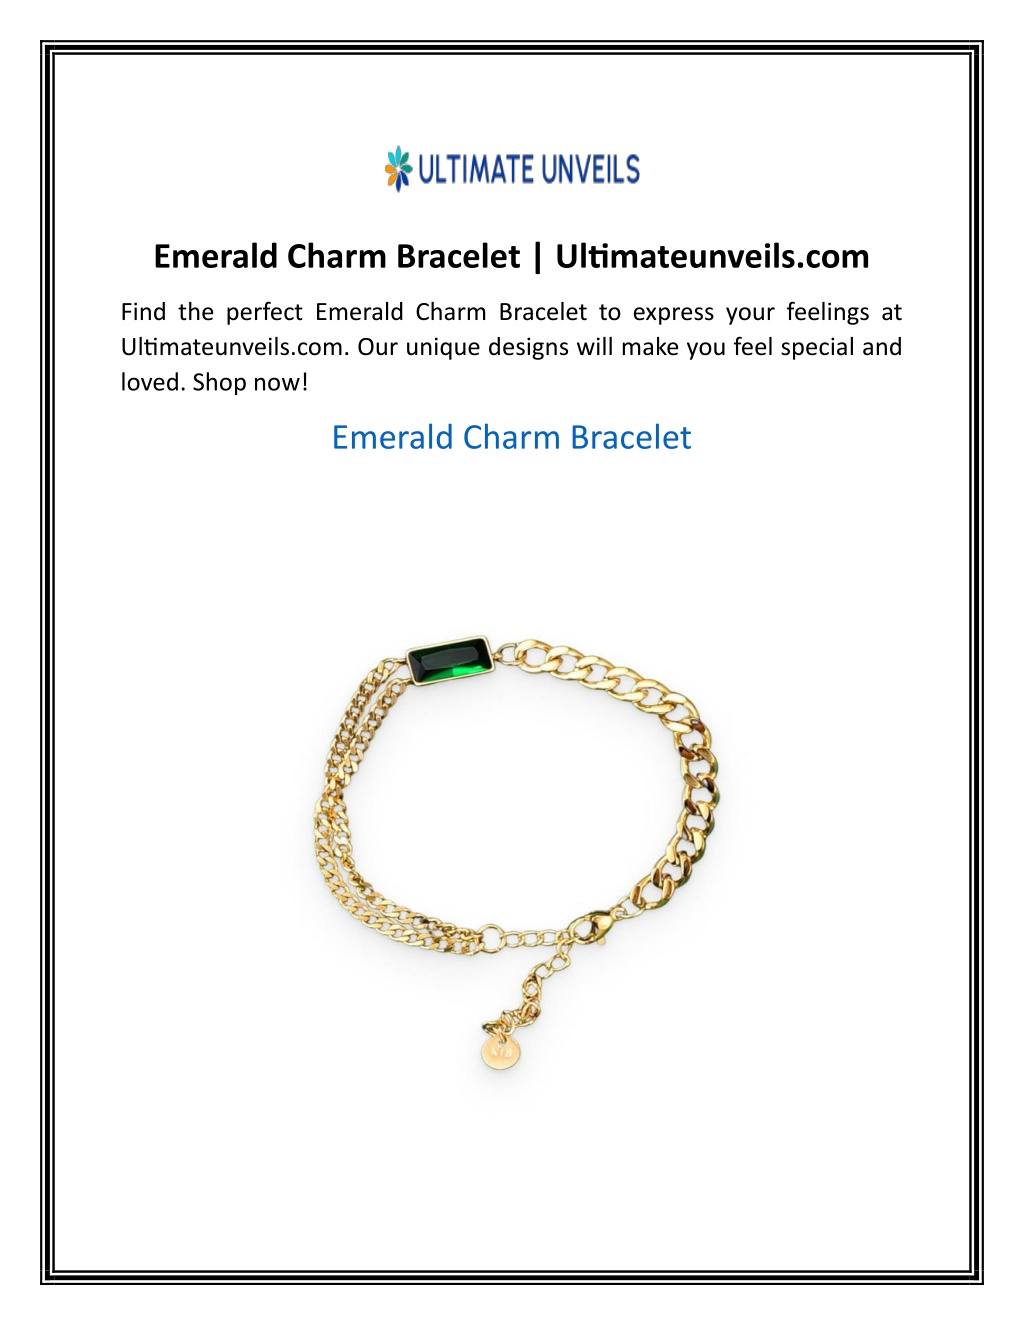 PPT - Emerald Charm Bracelet Ultimateunveils com PowerPoint ...